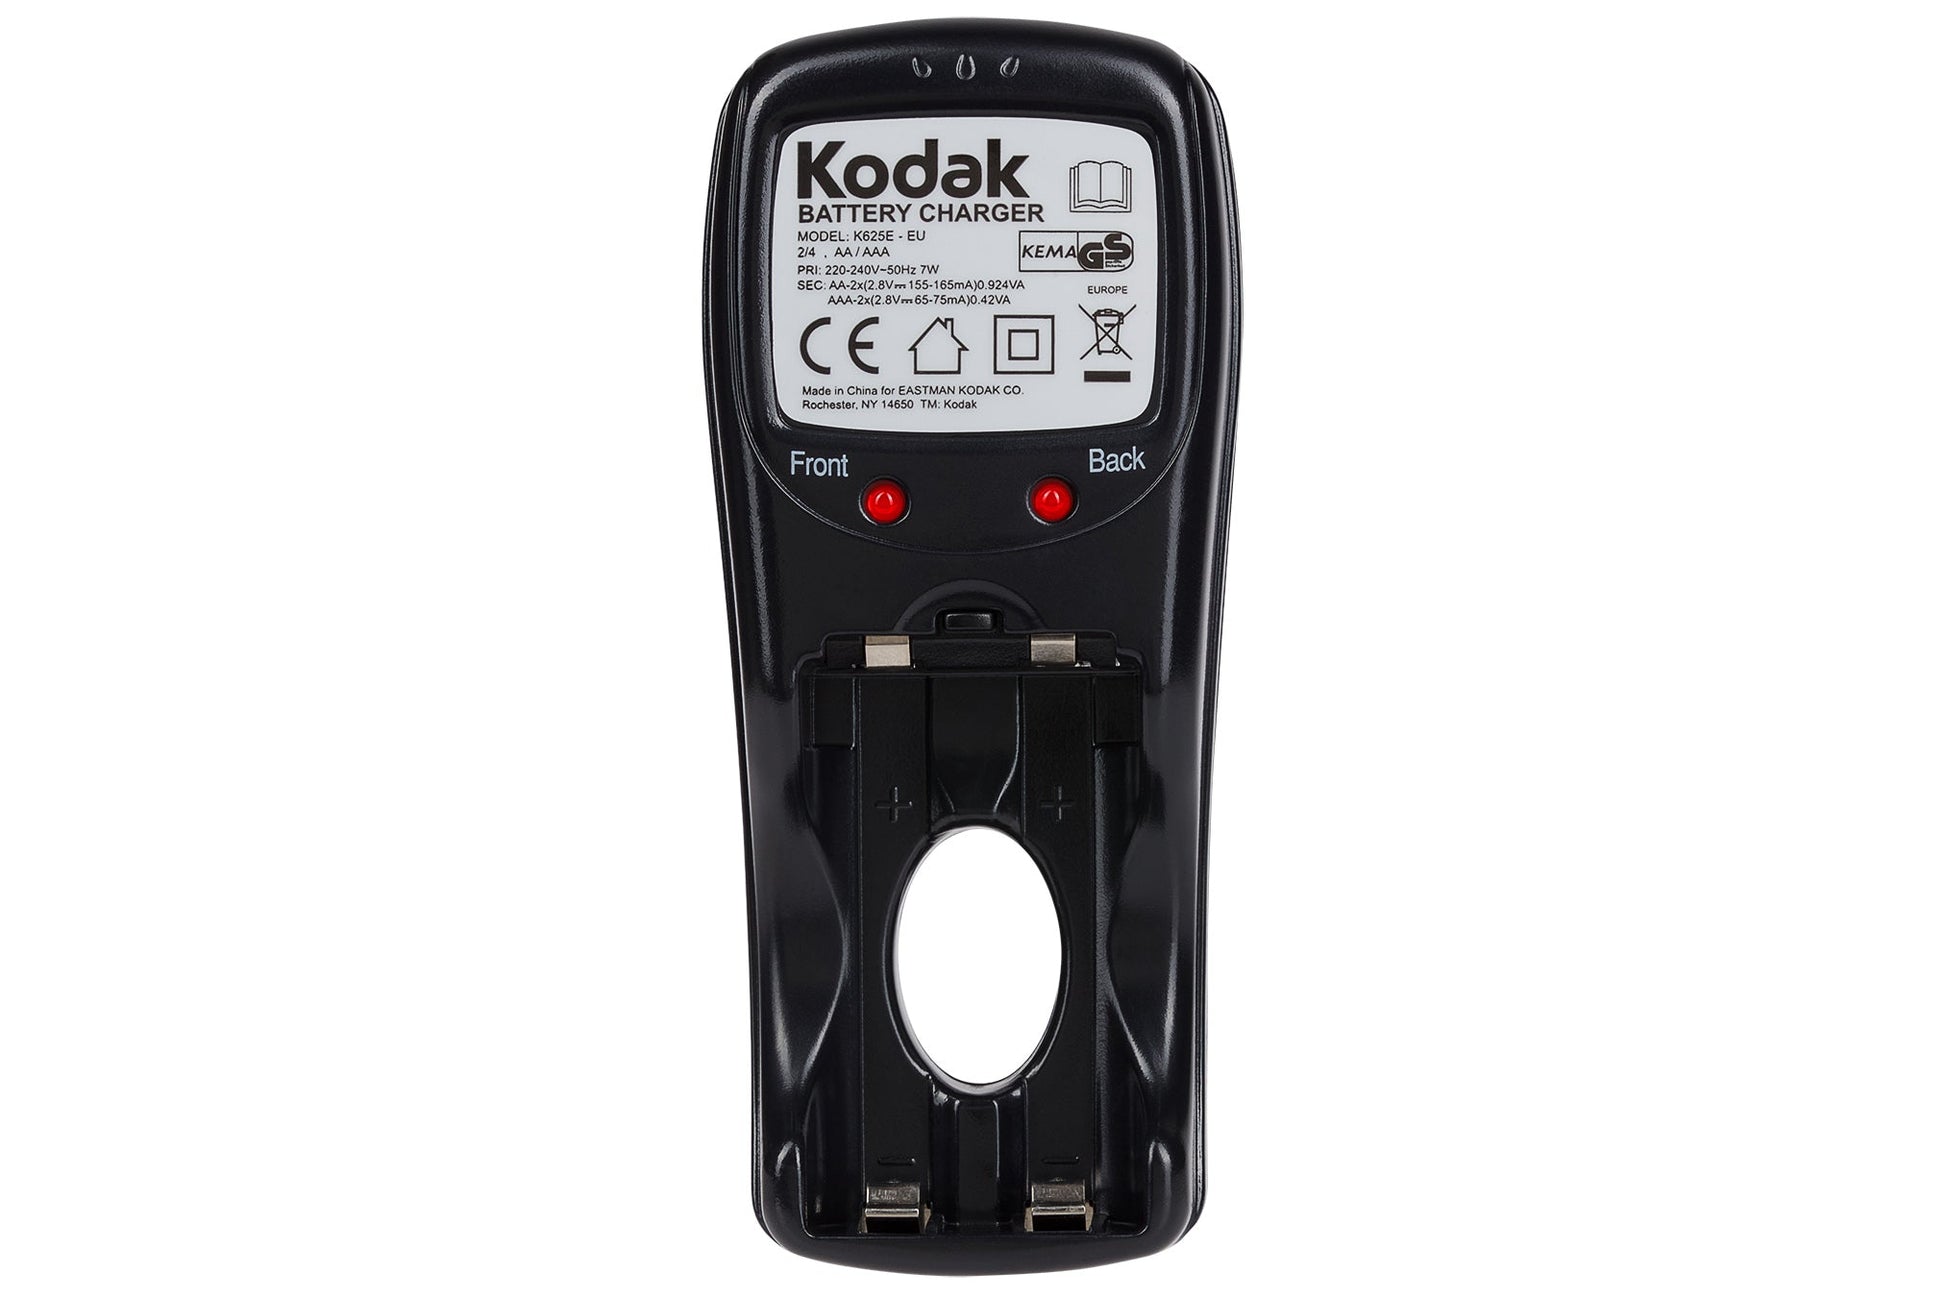 Kodak K625E-EU European Plug AA/AAA Battery Charger - Black - maplin.co.uk